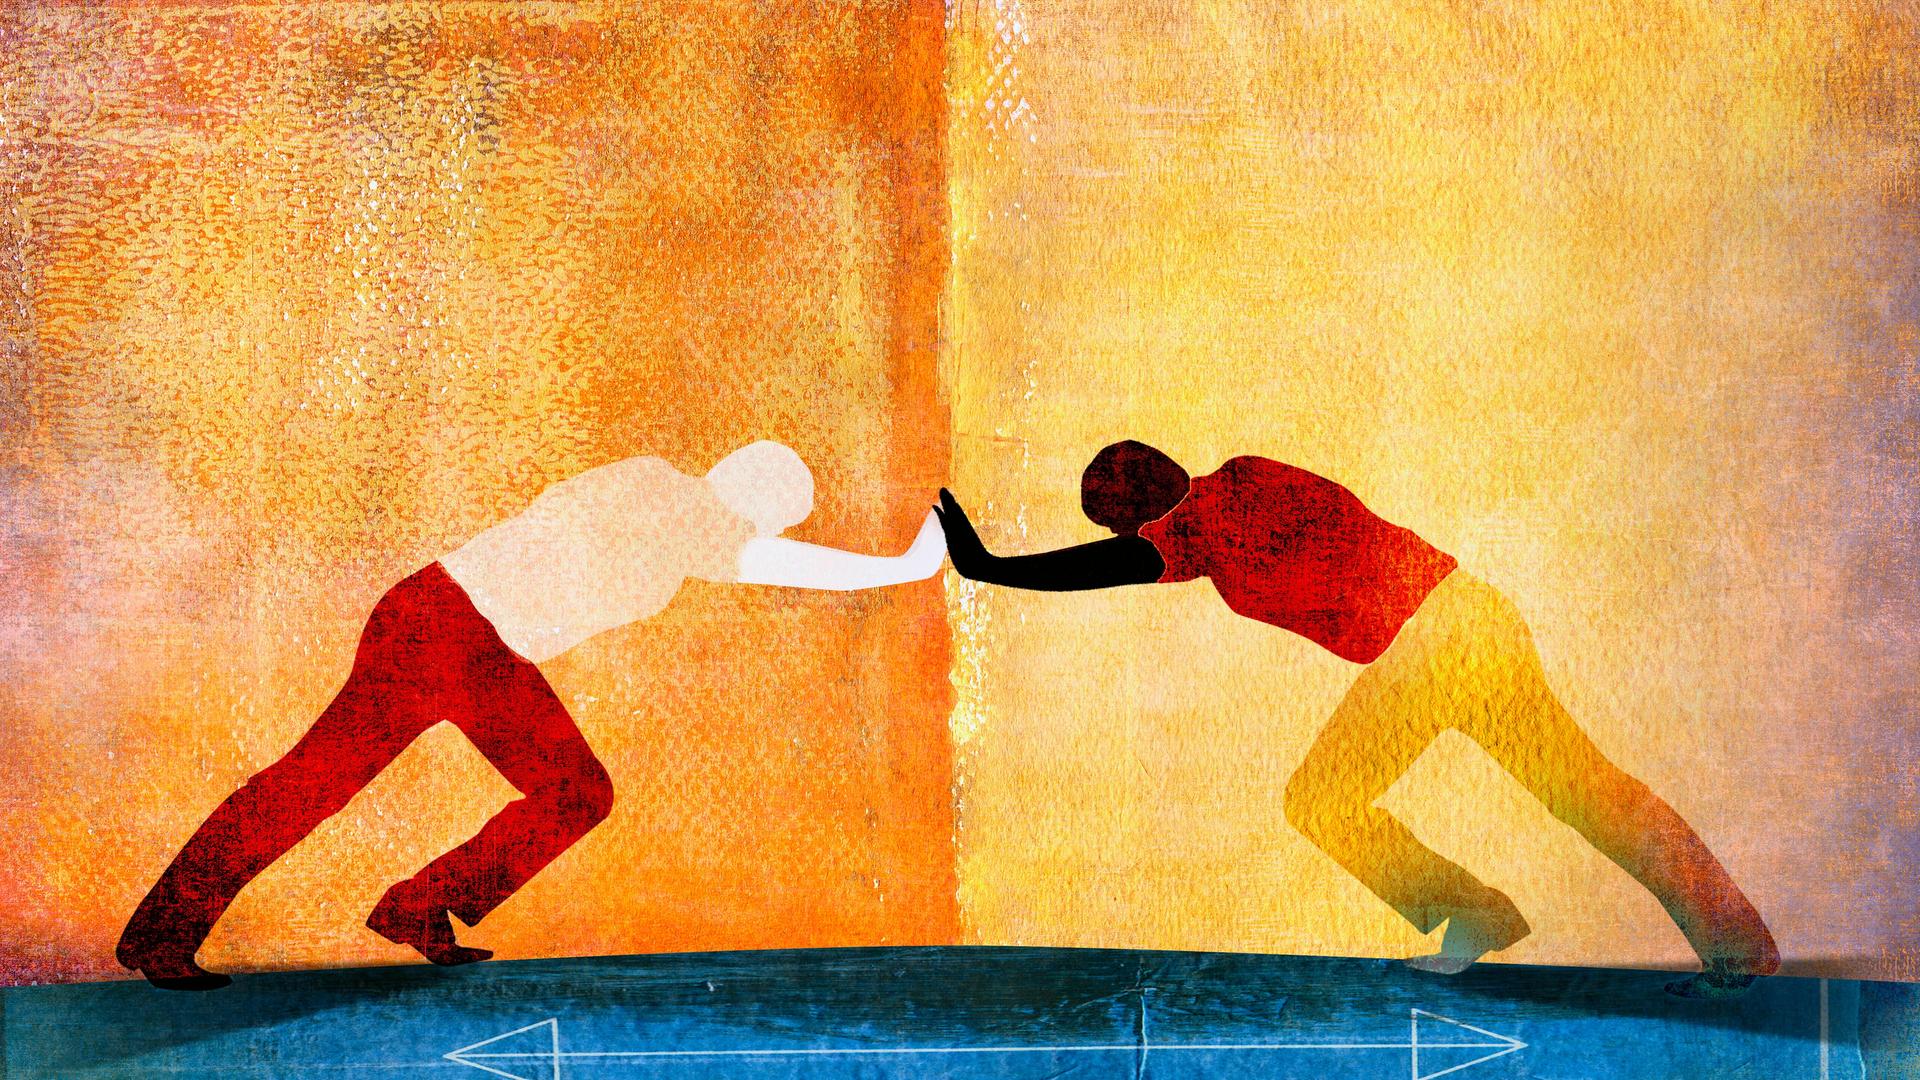 Orange-gelb-blaue Illustration zweier Personen, die konfrontativ gegeneinander drücken. Darunter vor blauem Hintergrund weisse Pfeile die sowohl nach links als auch nach rechts zeigen.